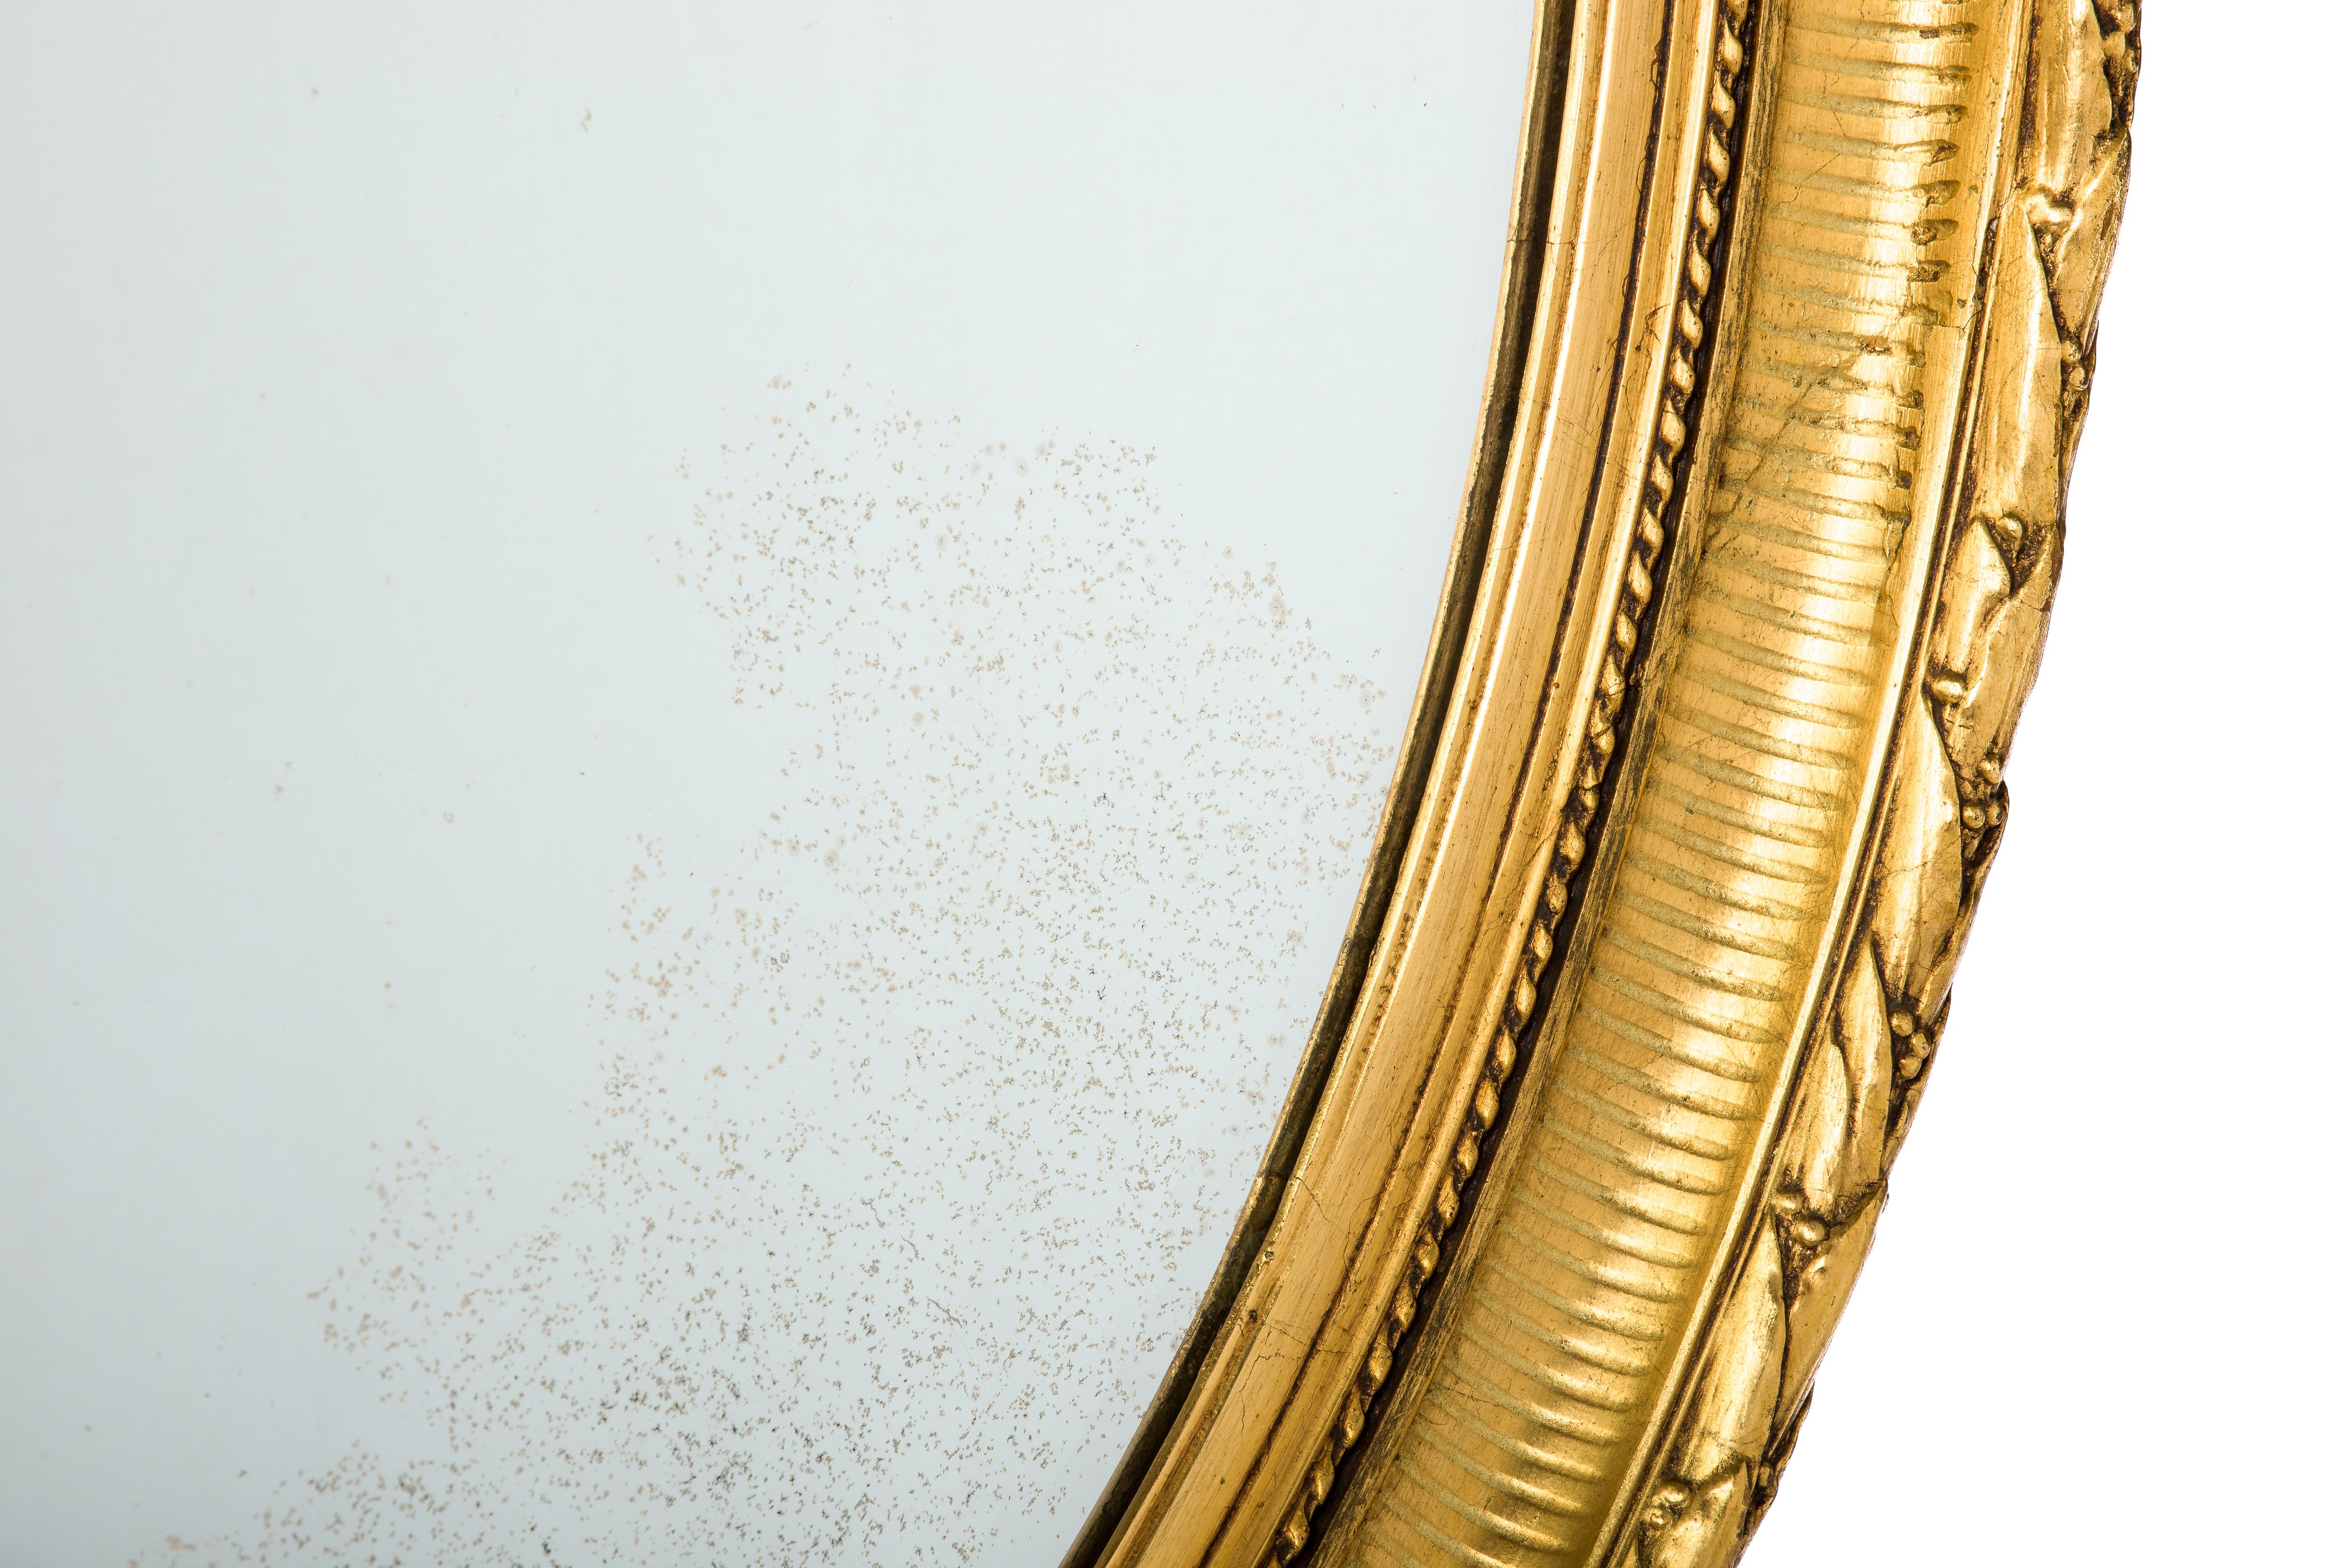 Dieser schöne, große, ovale, blattvergoldete Spiegel wurde im späten 19. Jahrhundert, um 1890, in Nordfrankreich hergestellt. Der Spiegel hat einen Rahmen aus massivem Lindenholz, der geglättet und mit Gipsabdrücken verziert ist. 
Der am höchsten